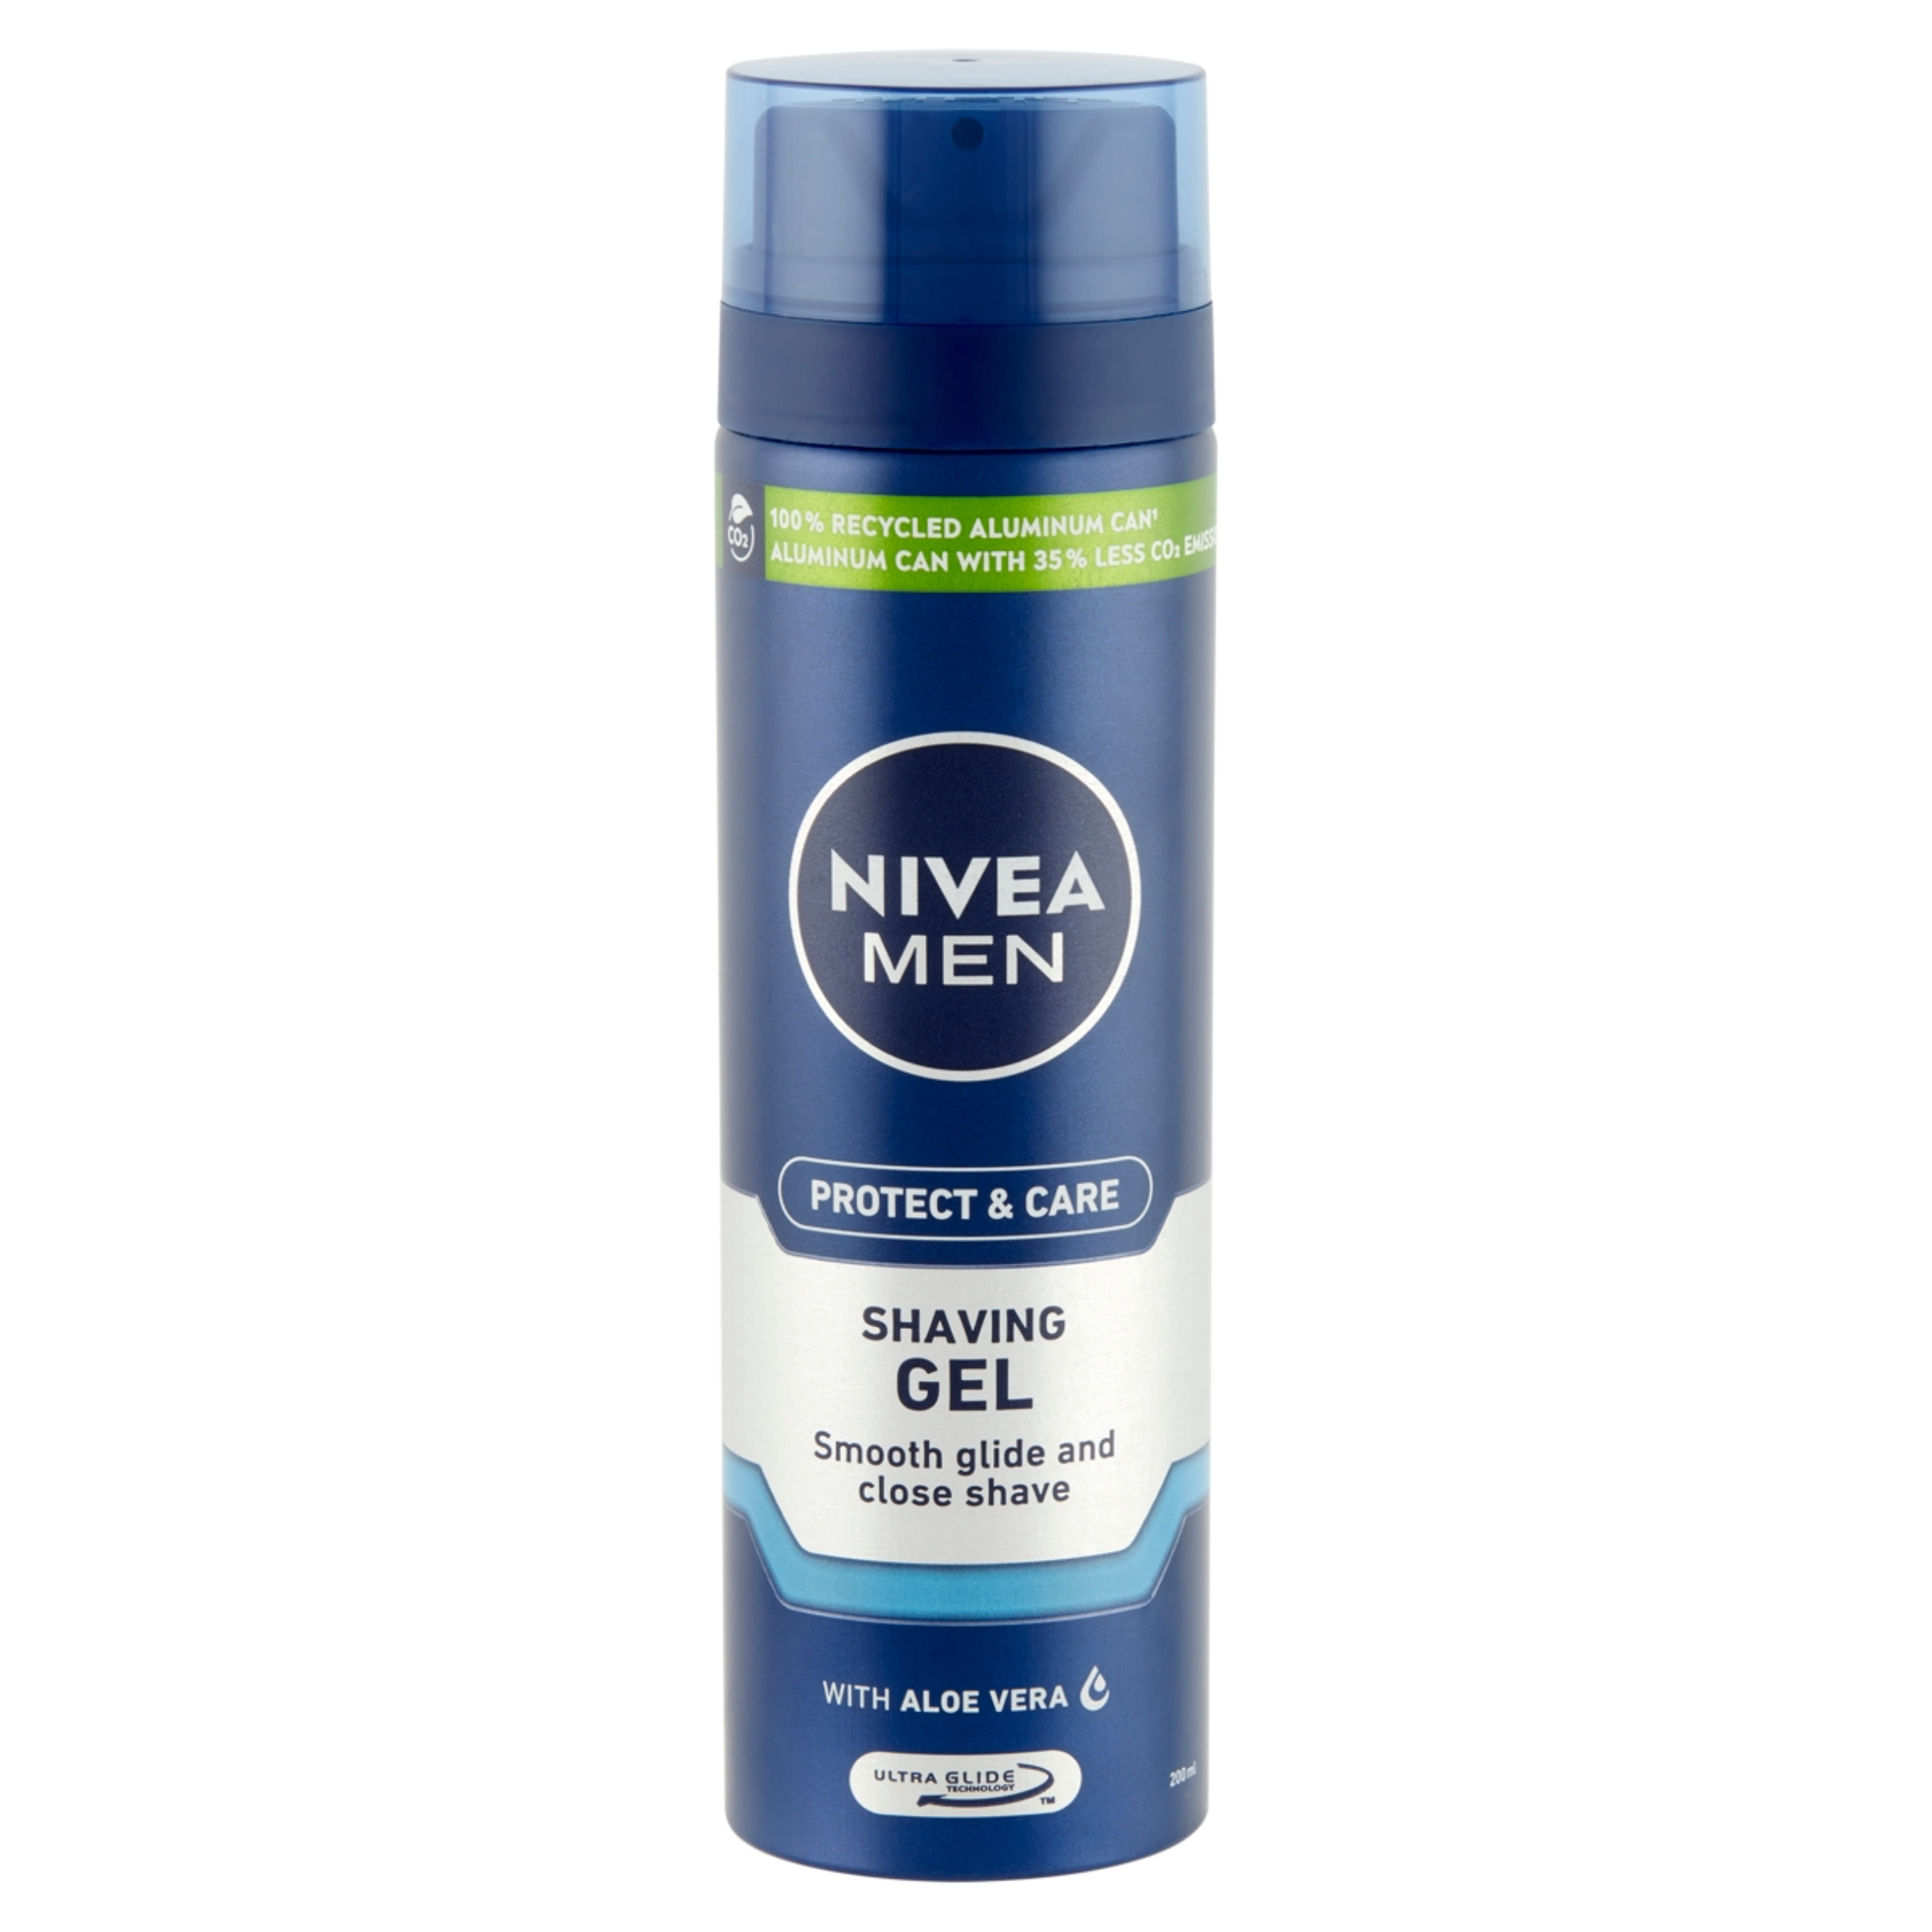 Nivea Men Protect & Care borotvagél - 200 ml-3